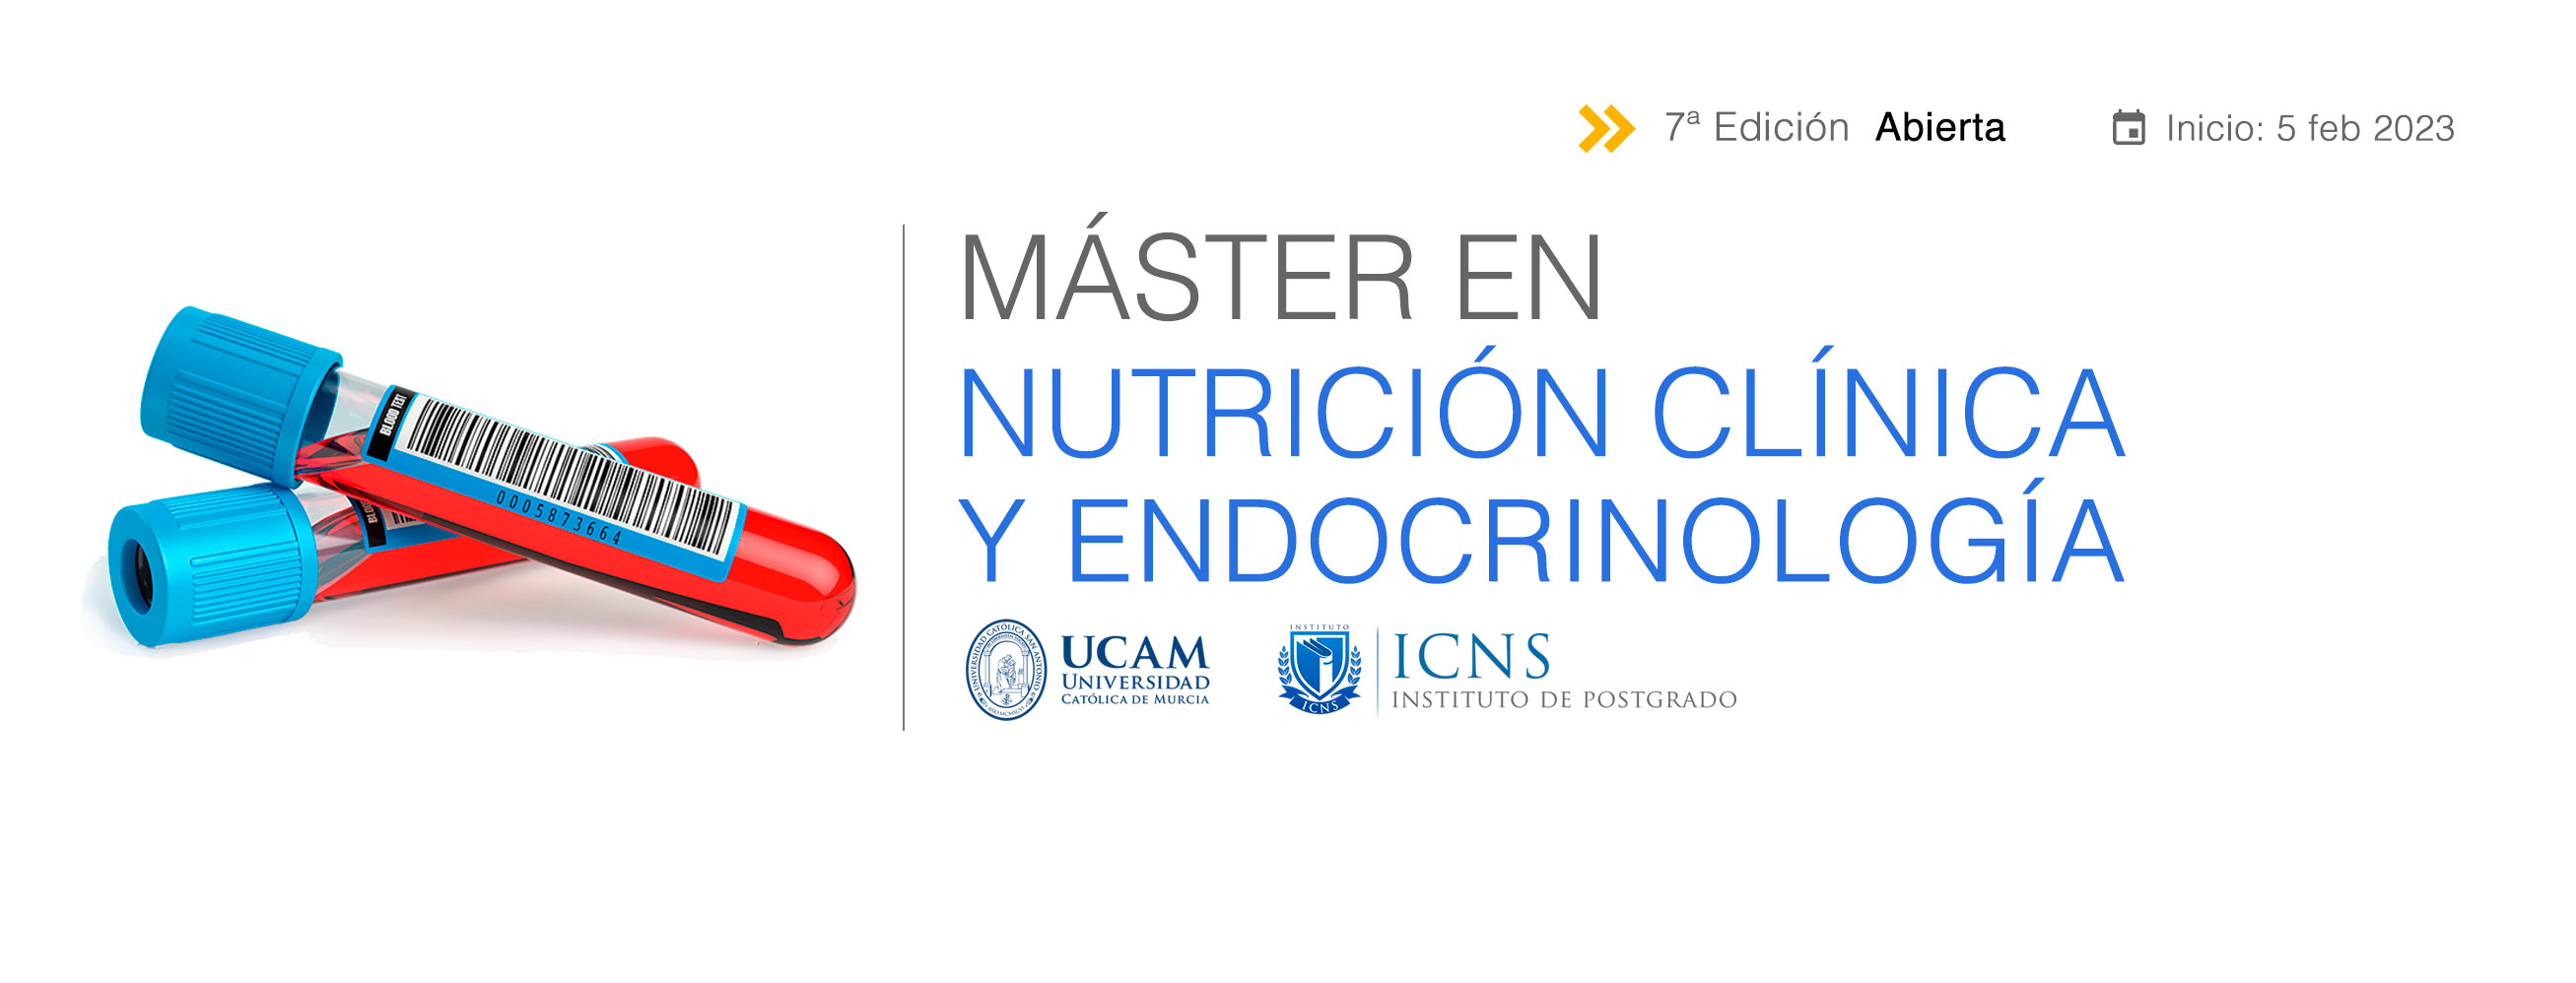 Máster en Nutrición Clínica y Endocrinología (CLMASTERENDO4)